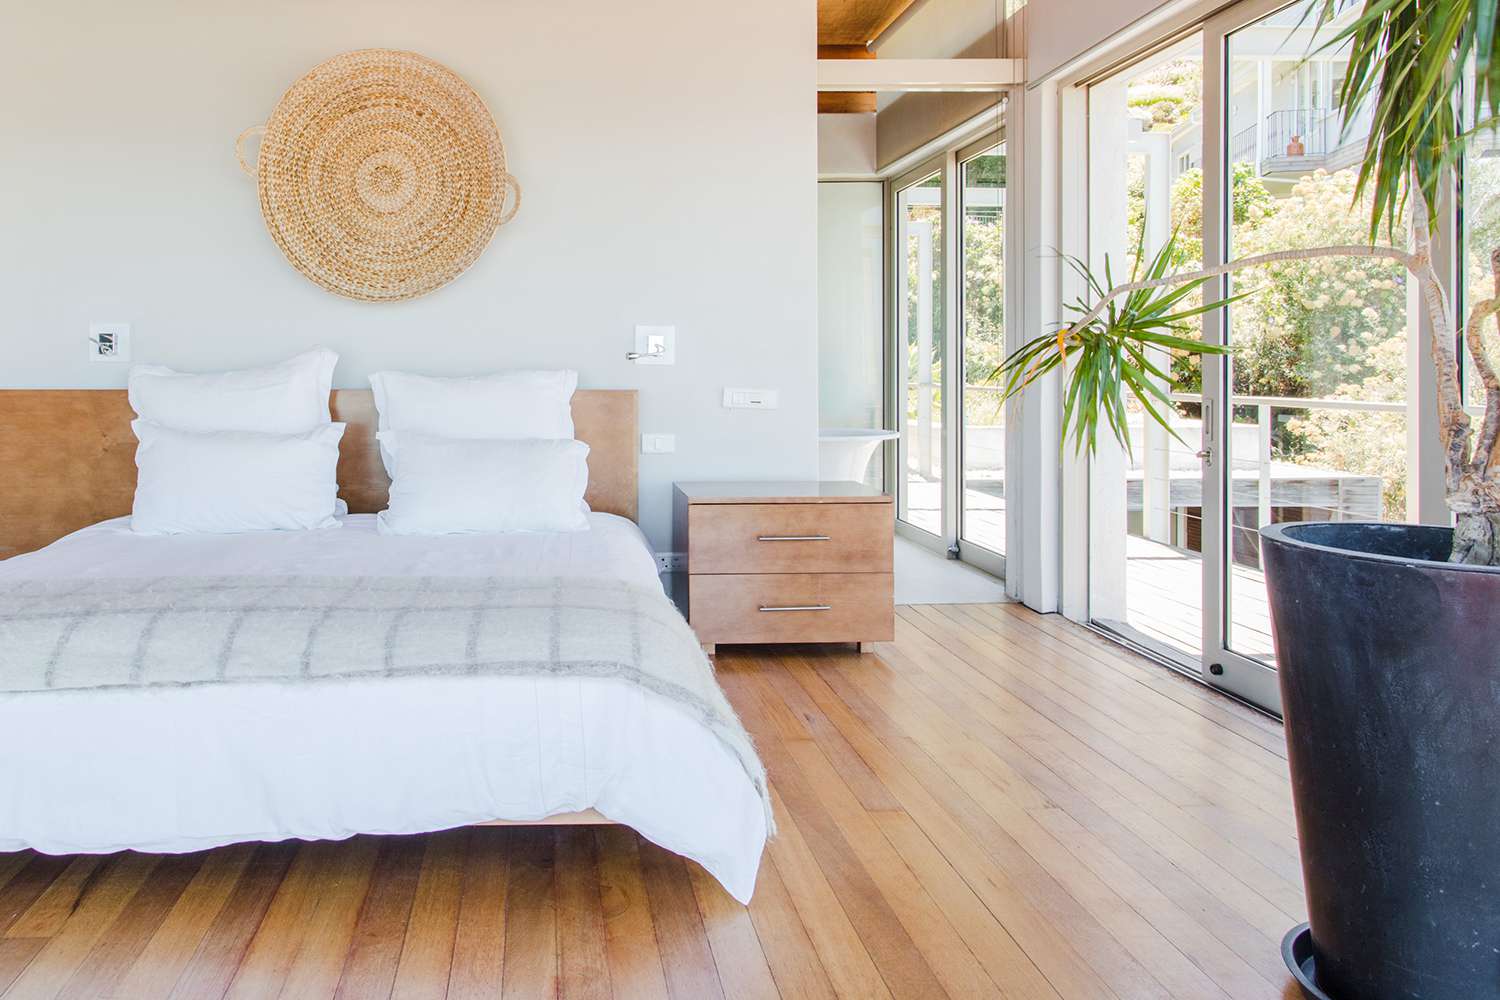 Quarto com uma cama king size, portas de vidro deslizantes, planta de palmeira e decoração circular de parede em tecido